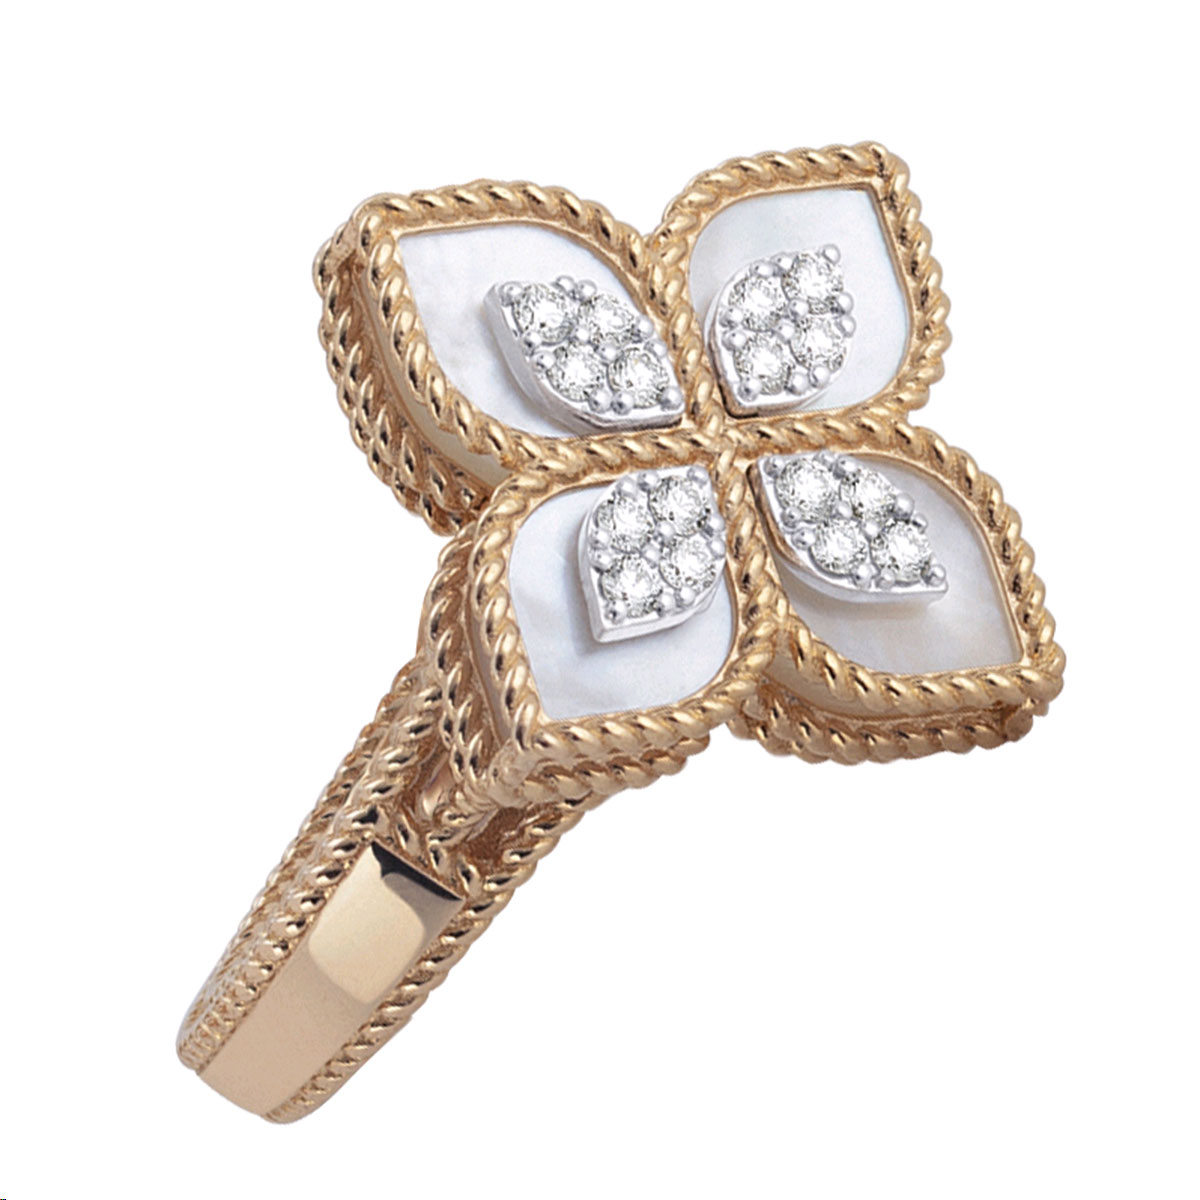 Roberto Coin Diamond Hammered Gold 'Martellato' Ring 18K YG 9.4g  CJL (CJL046224) | eBay